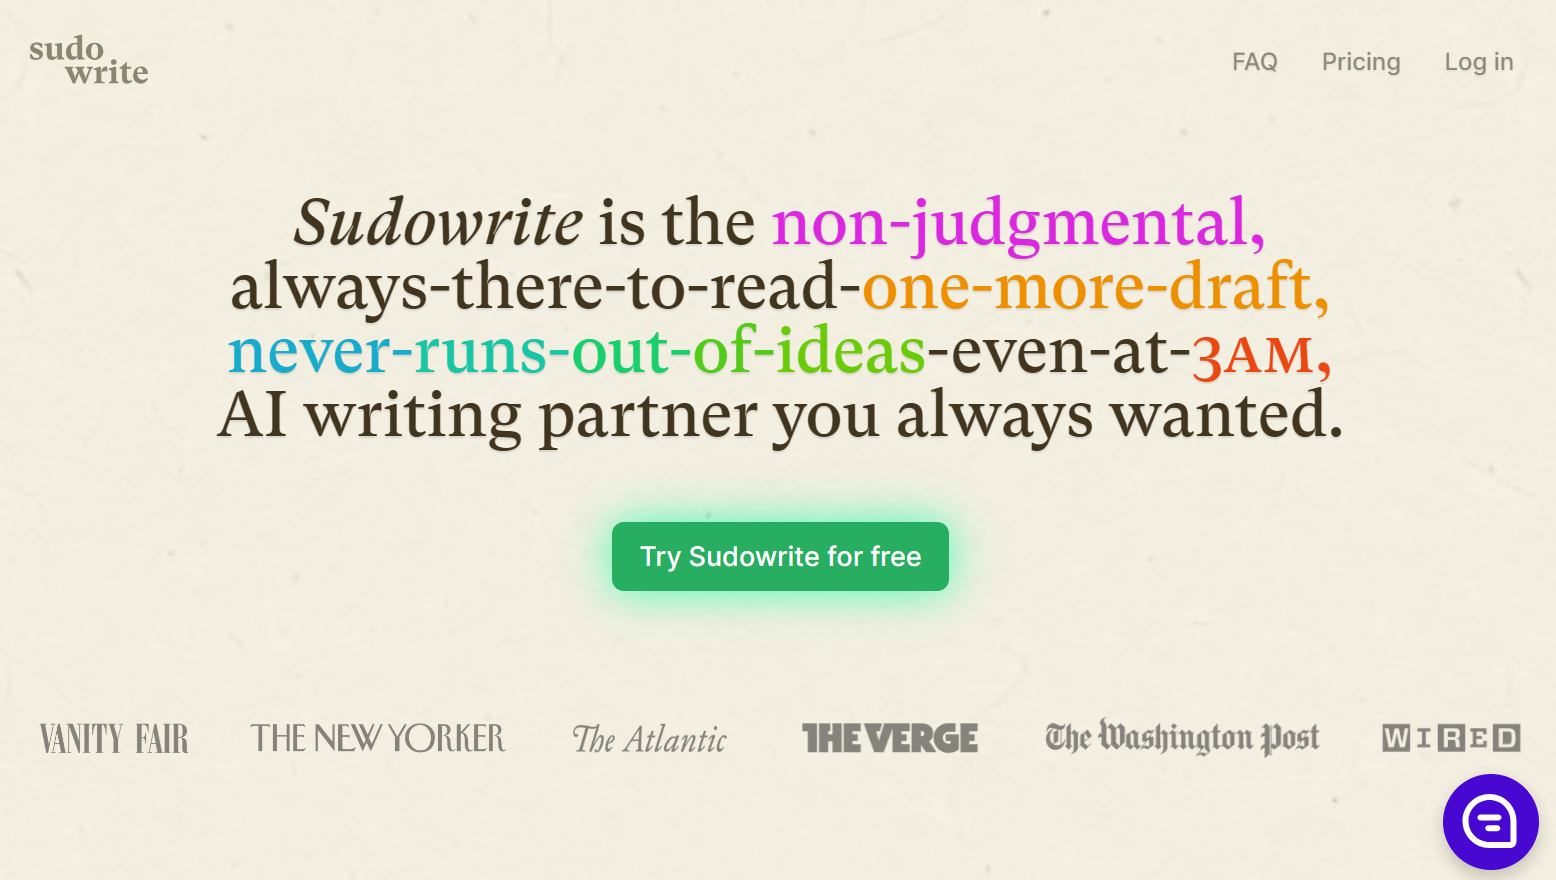 sudowrite.com – AI writing partner